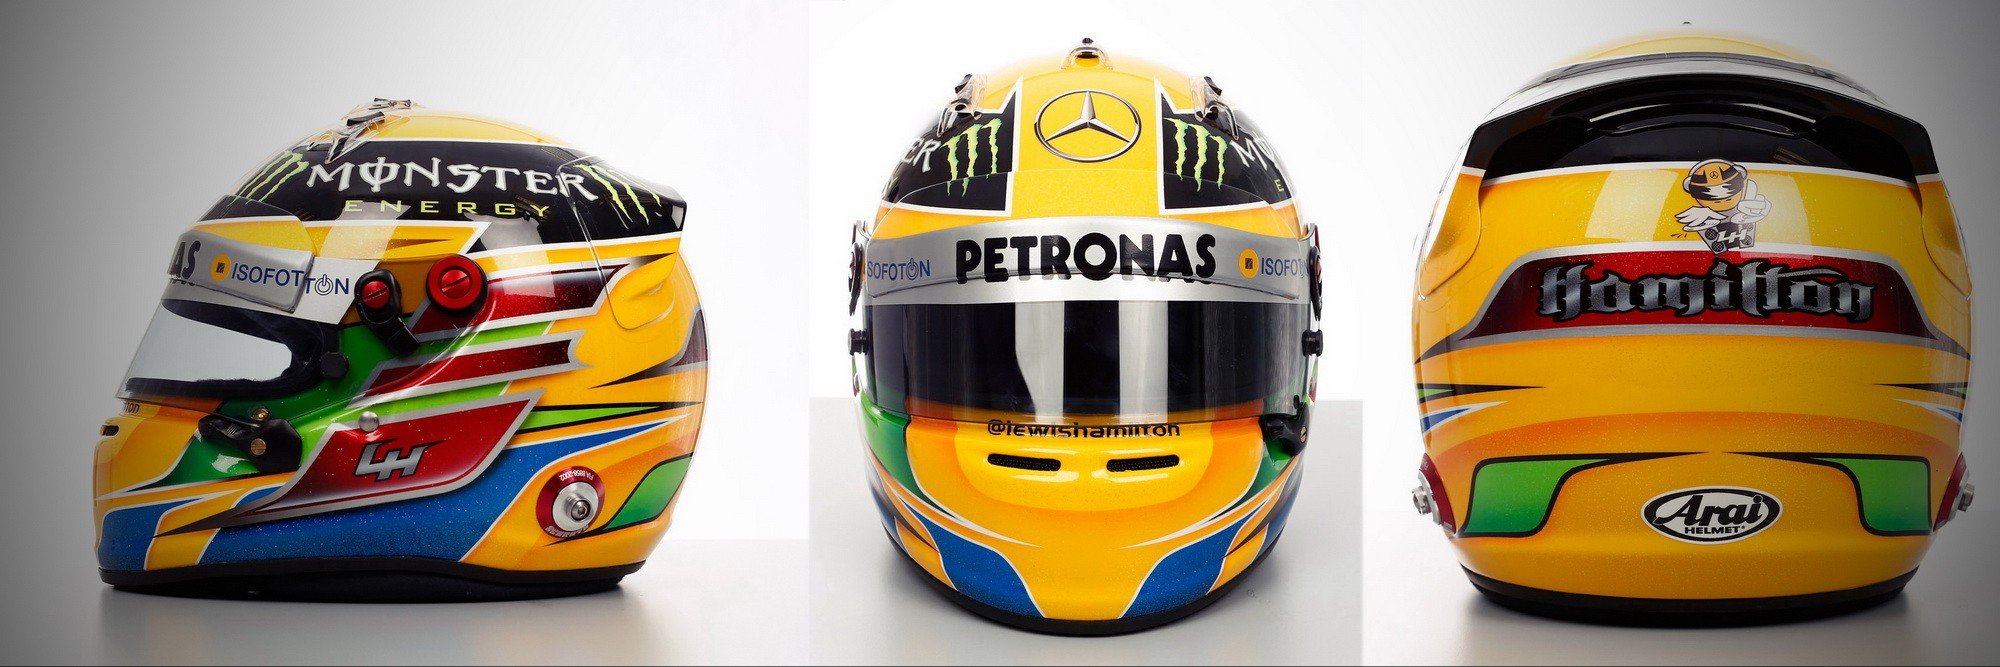 Шлем Льюиса Хэмилтона на сезон 2013 года | 2013 helmet of Lewis Hamilton